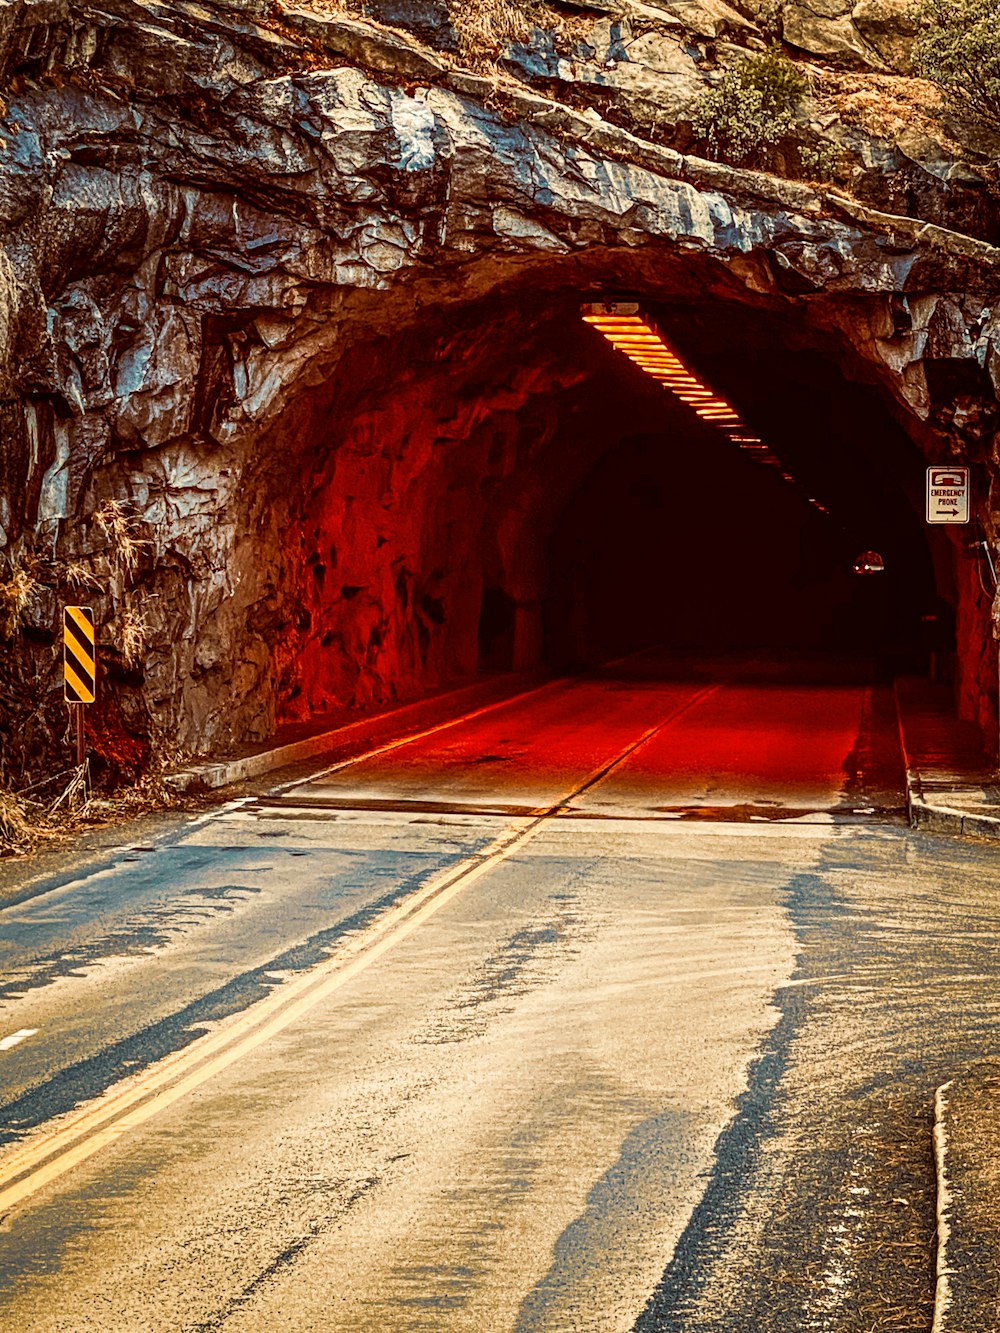 eine Straße, die in einen Tunnel führt, mit einer roten Ampel am Ende